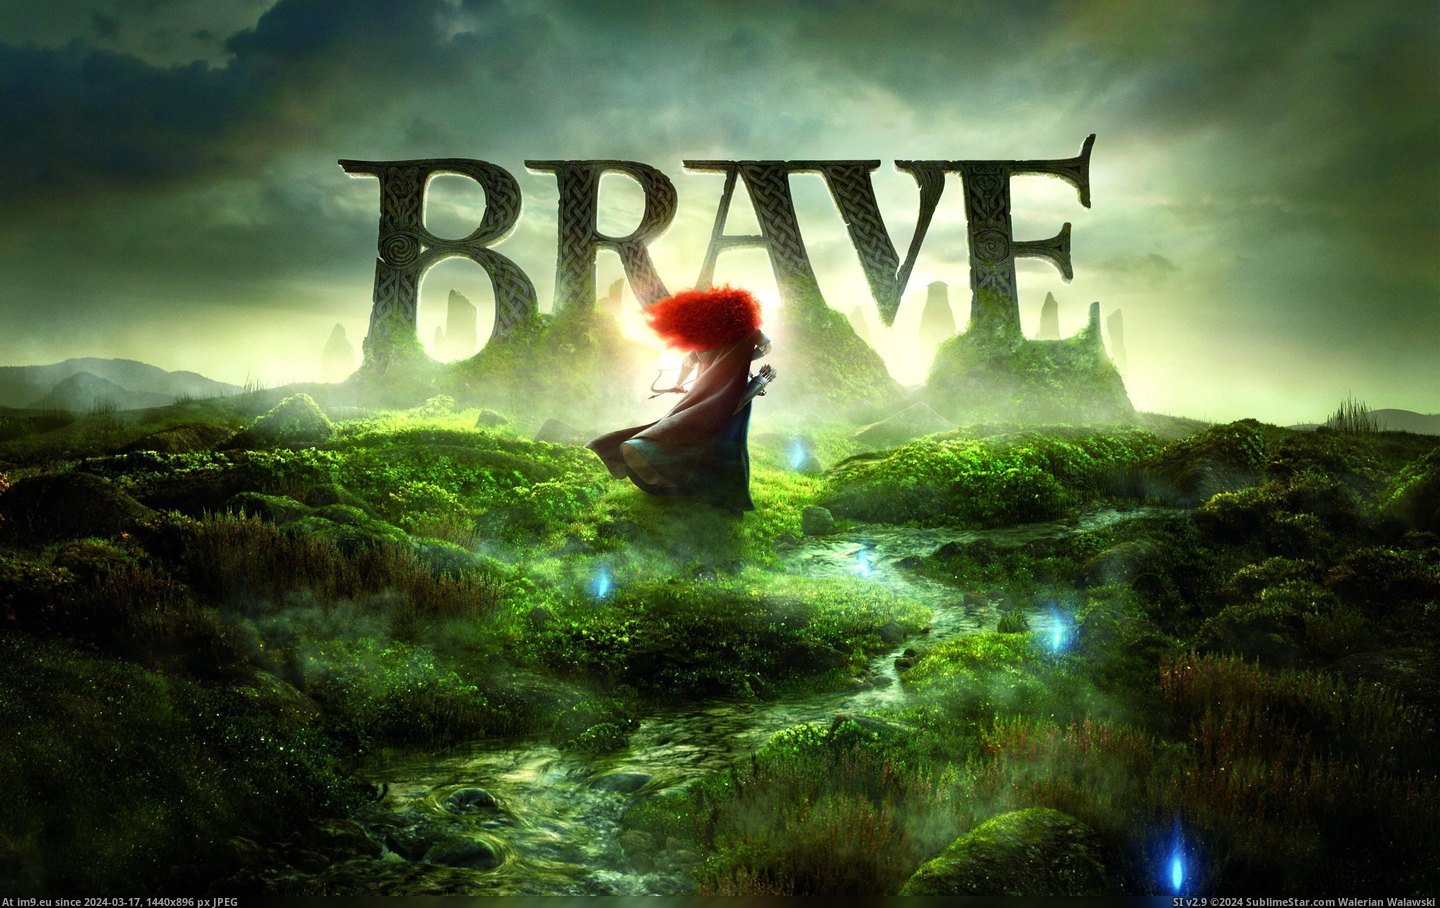 #Wallpaper #Wide #Brave #Movie Brave Movie 2012 Wide (1) HD Wallpaper Pic. (Bild von album Unique HD Wallpapers))